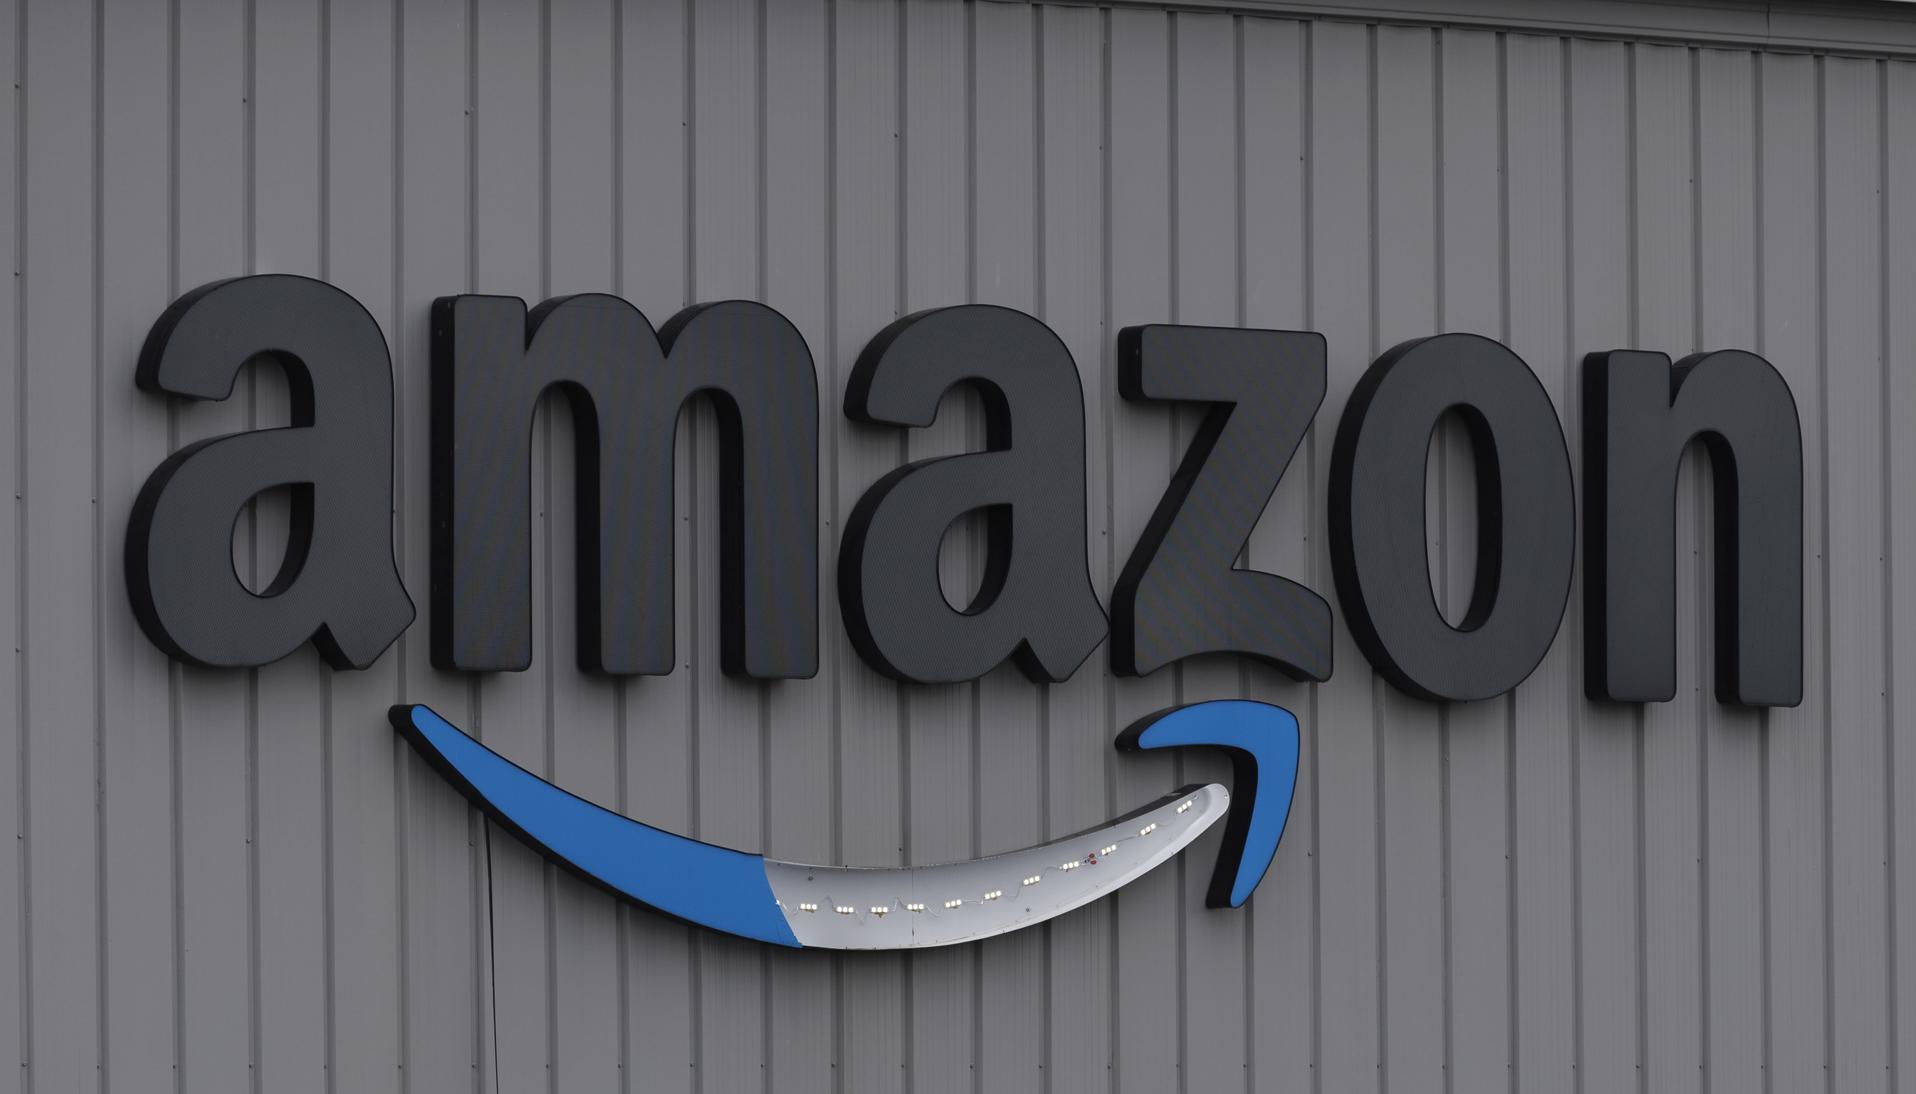 Amazon tendrá que borrar cuentas inactivas de niños y ciertas grabaciones.